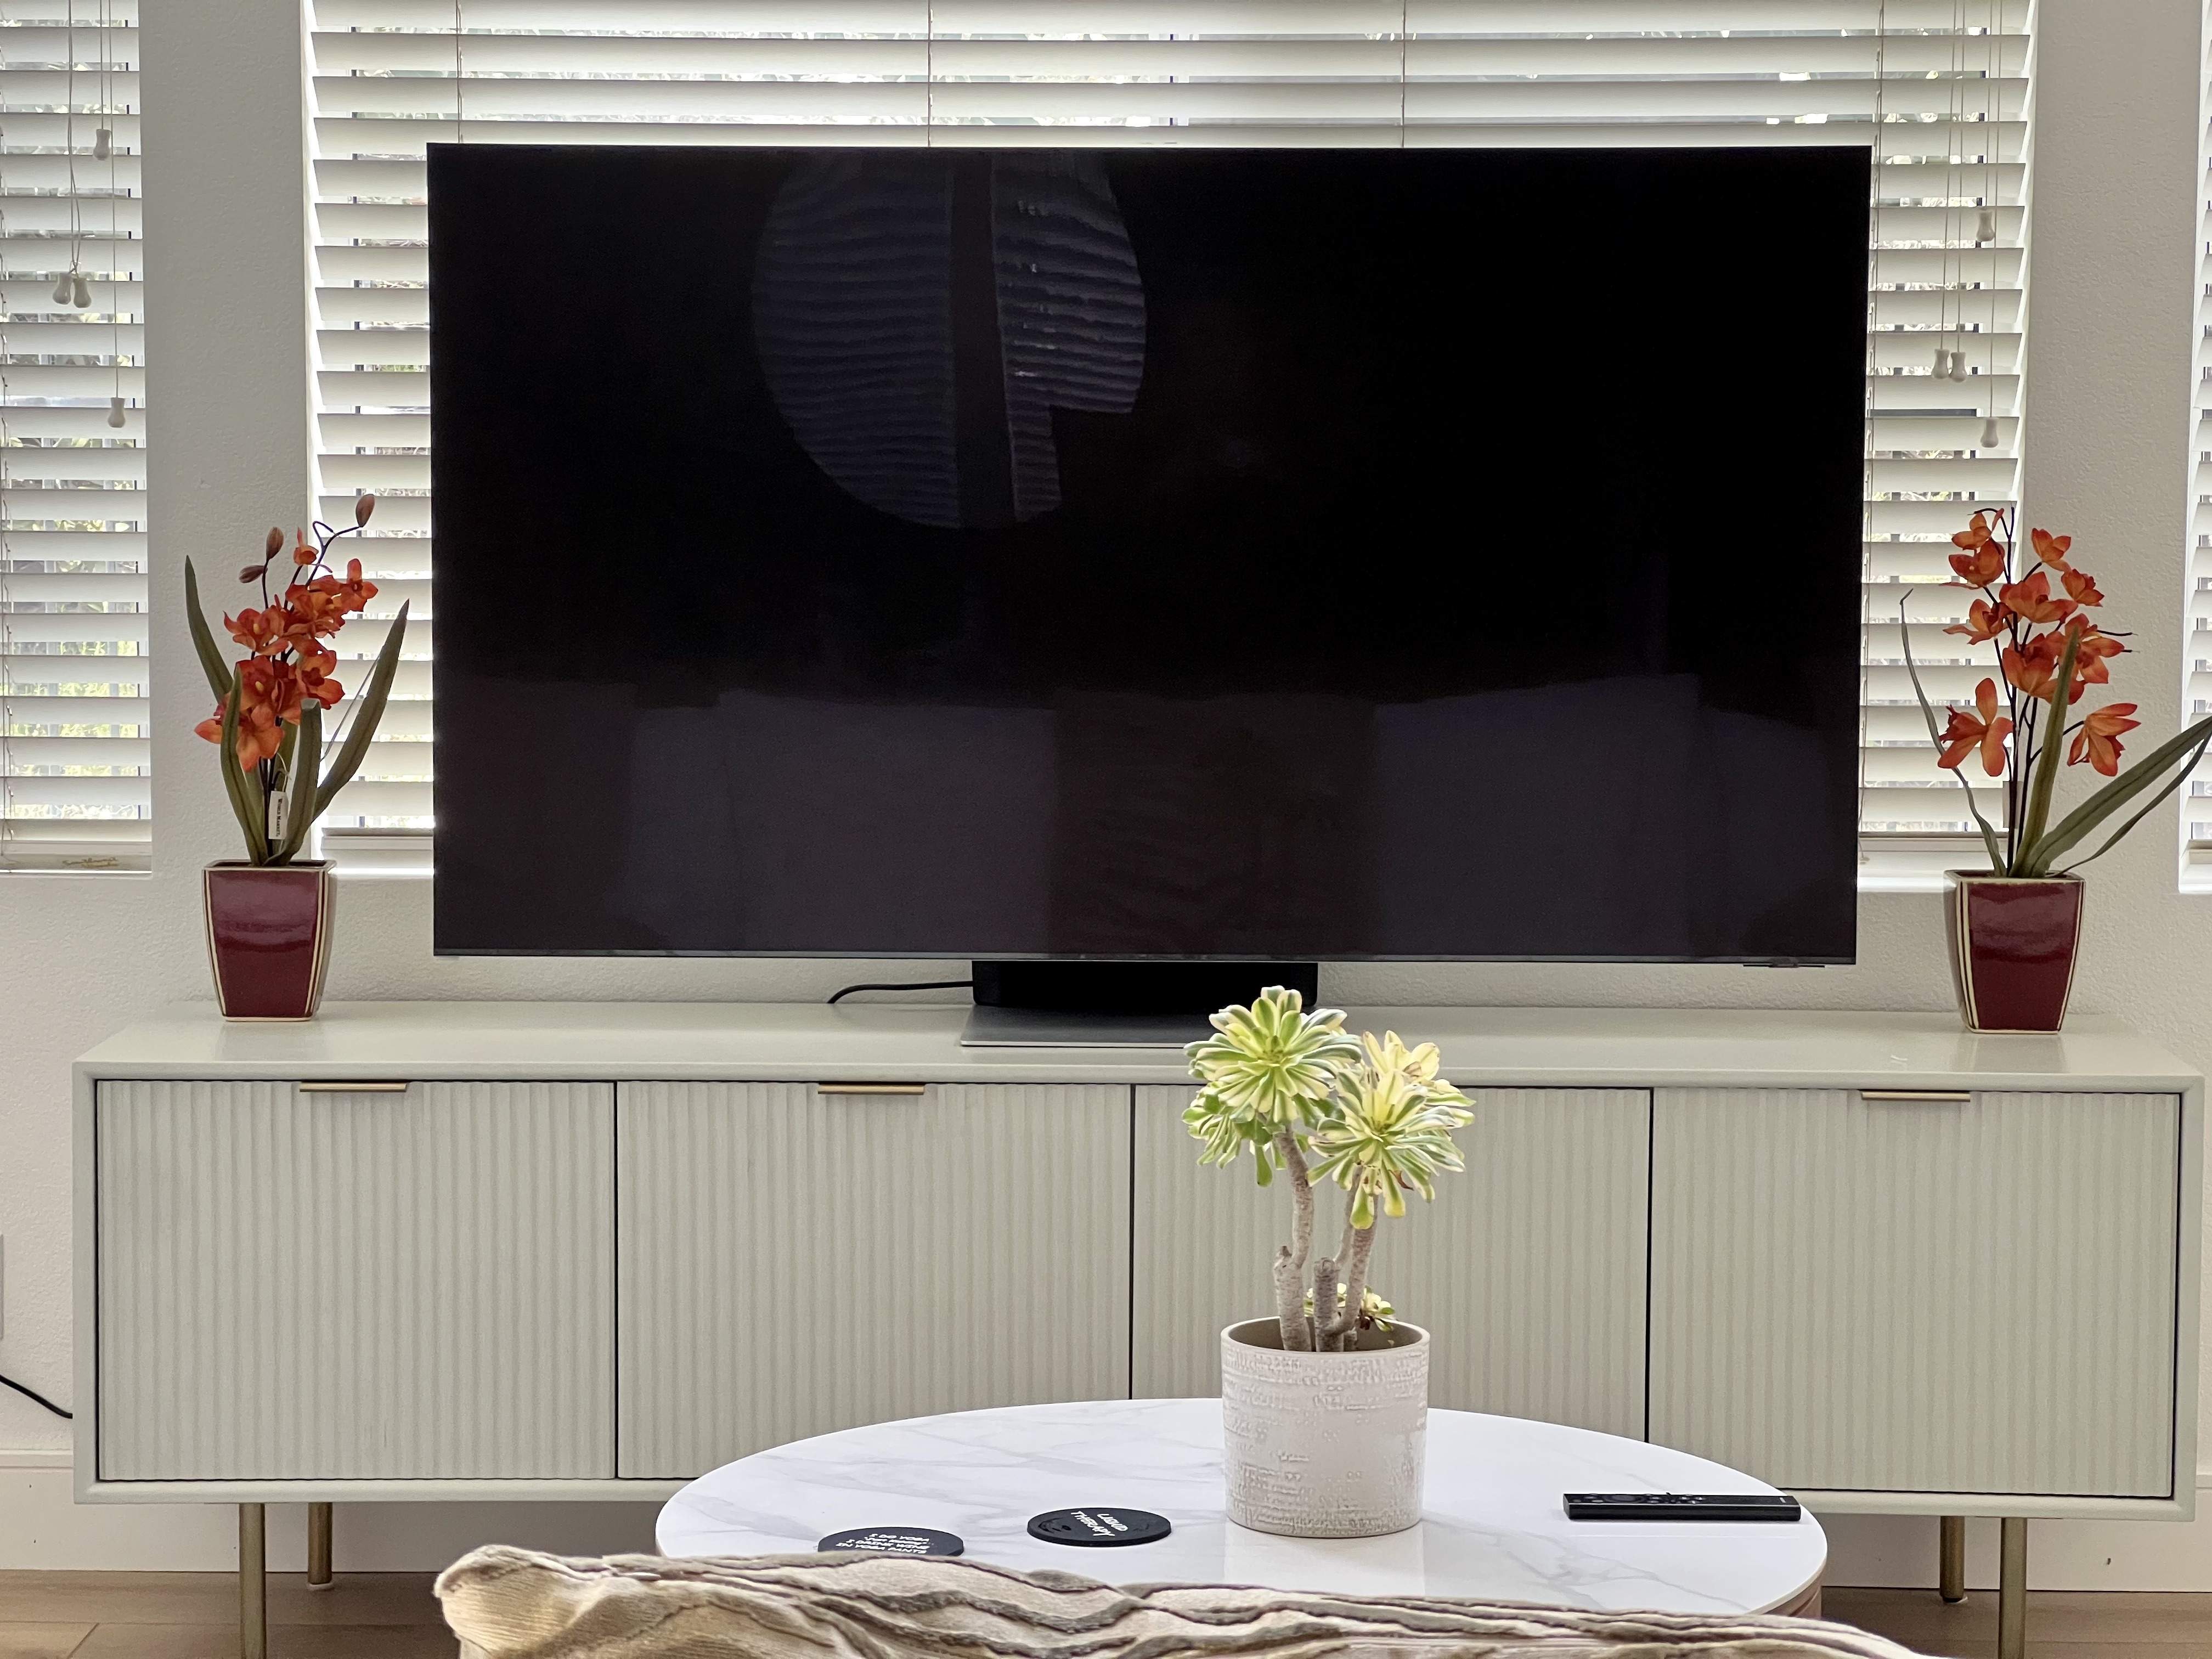 QLED 8k 65" Samsung Smart Tizen TV